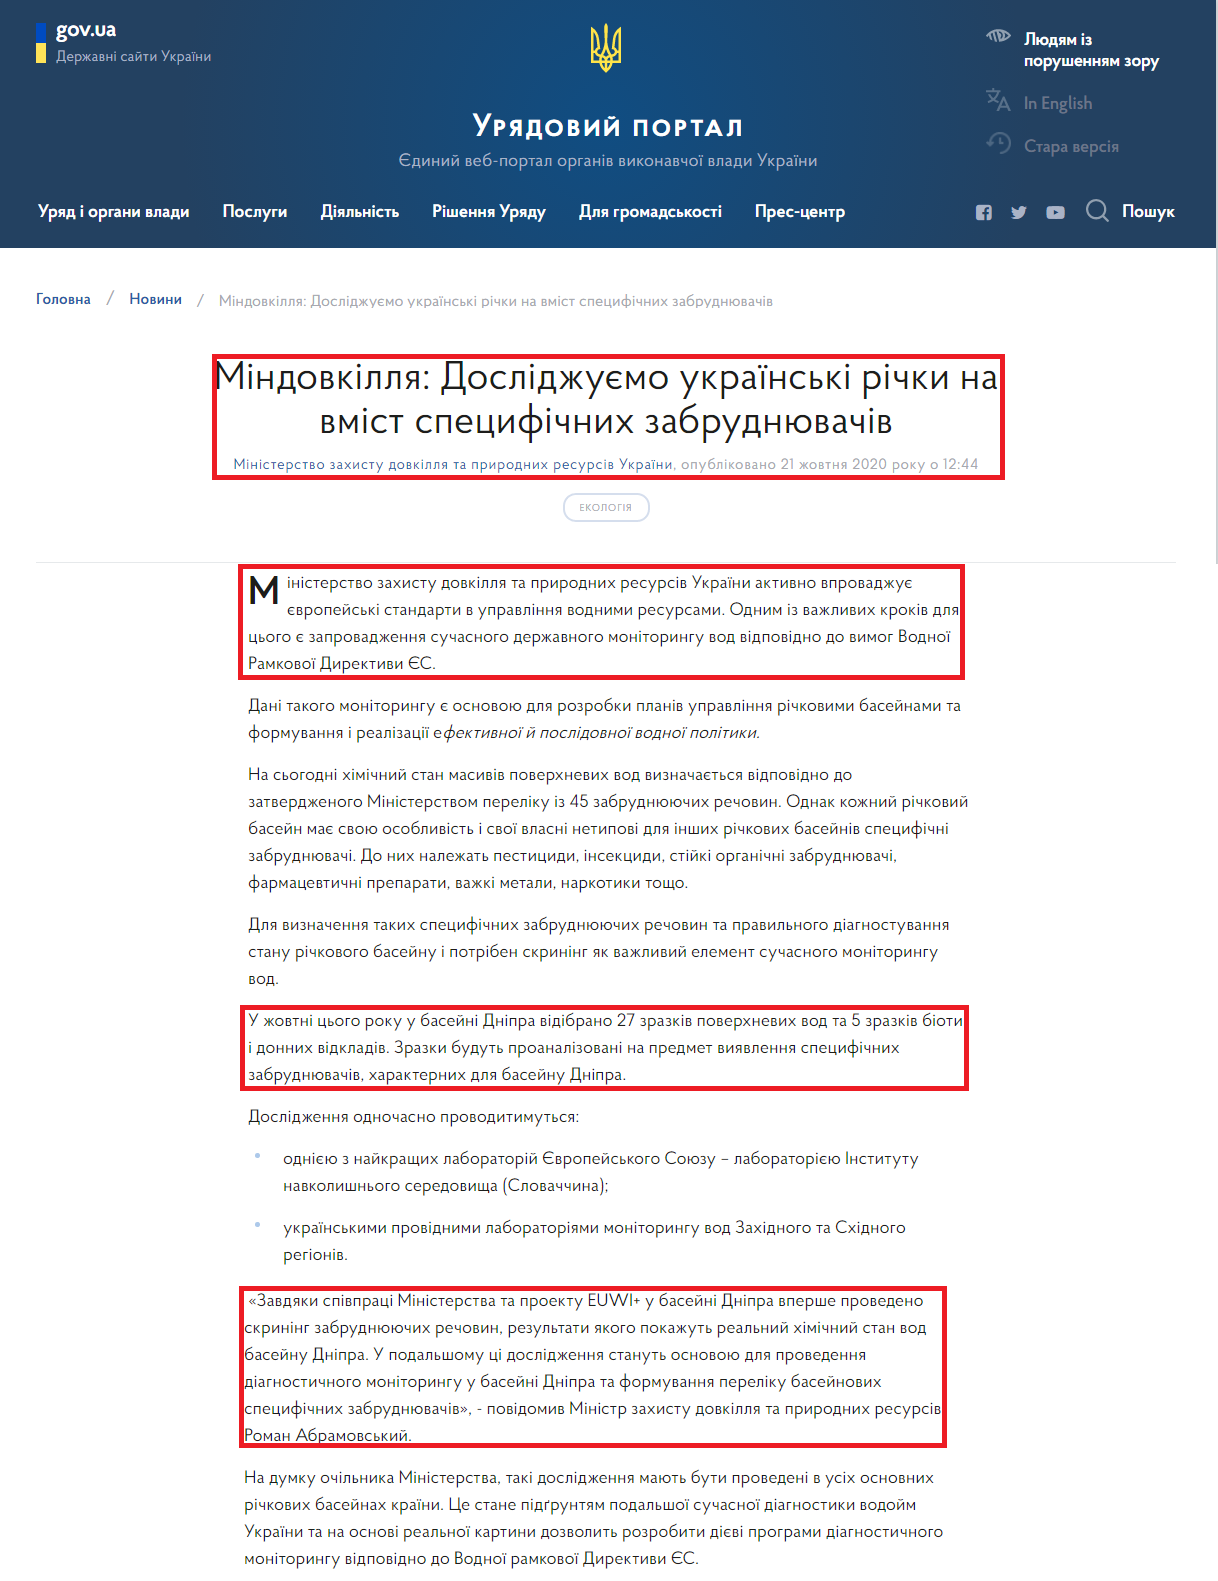 https://www.kmu.gov.ua/news/mindovkillya-doslidzhuyemo-ukrayinski-richki-na-vmist-specifichnih-zabrudnyuvachiv